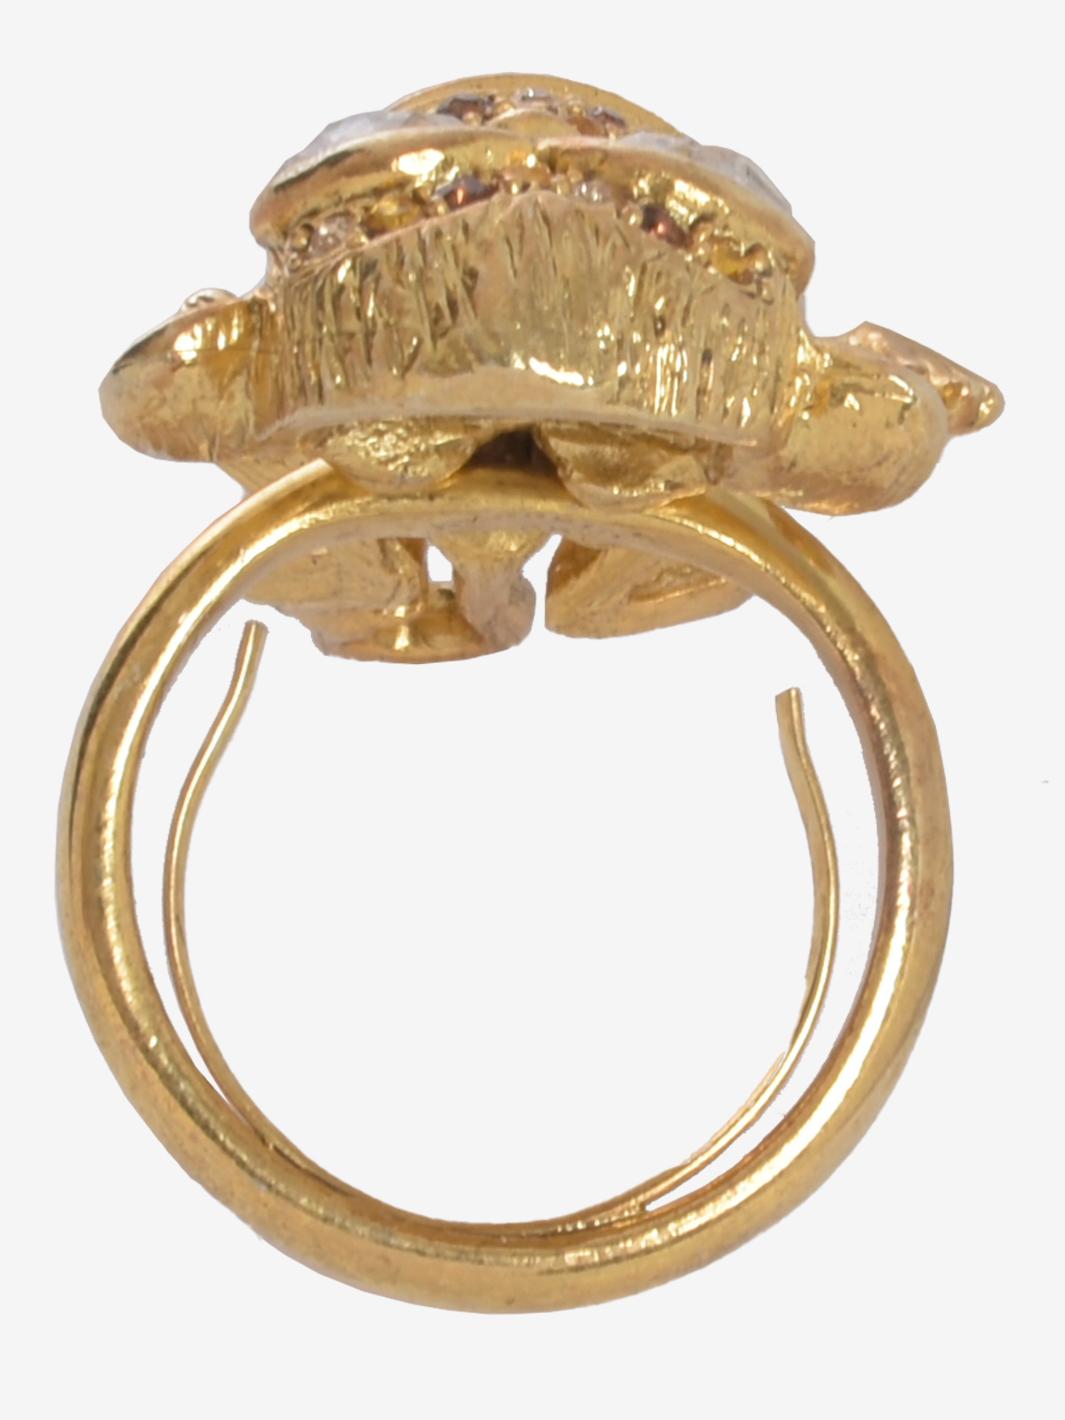 Der Kenneth Jay Lane Monkey Gold Ring ist im Inneren anpassungsfähig, inspiriert von der Welt der Tiere. Weiße Strasssteine, Hamilton Gold amerikanischer Zinnguss.

ERHALTUNGSZUSTAND
Guter Zustand

ZUSAMMENSETZUNG
Weiße Strasssteine
Hamilton Gold